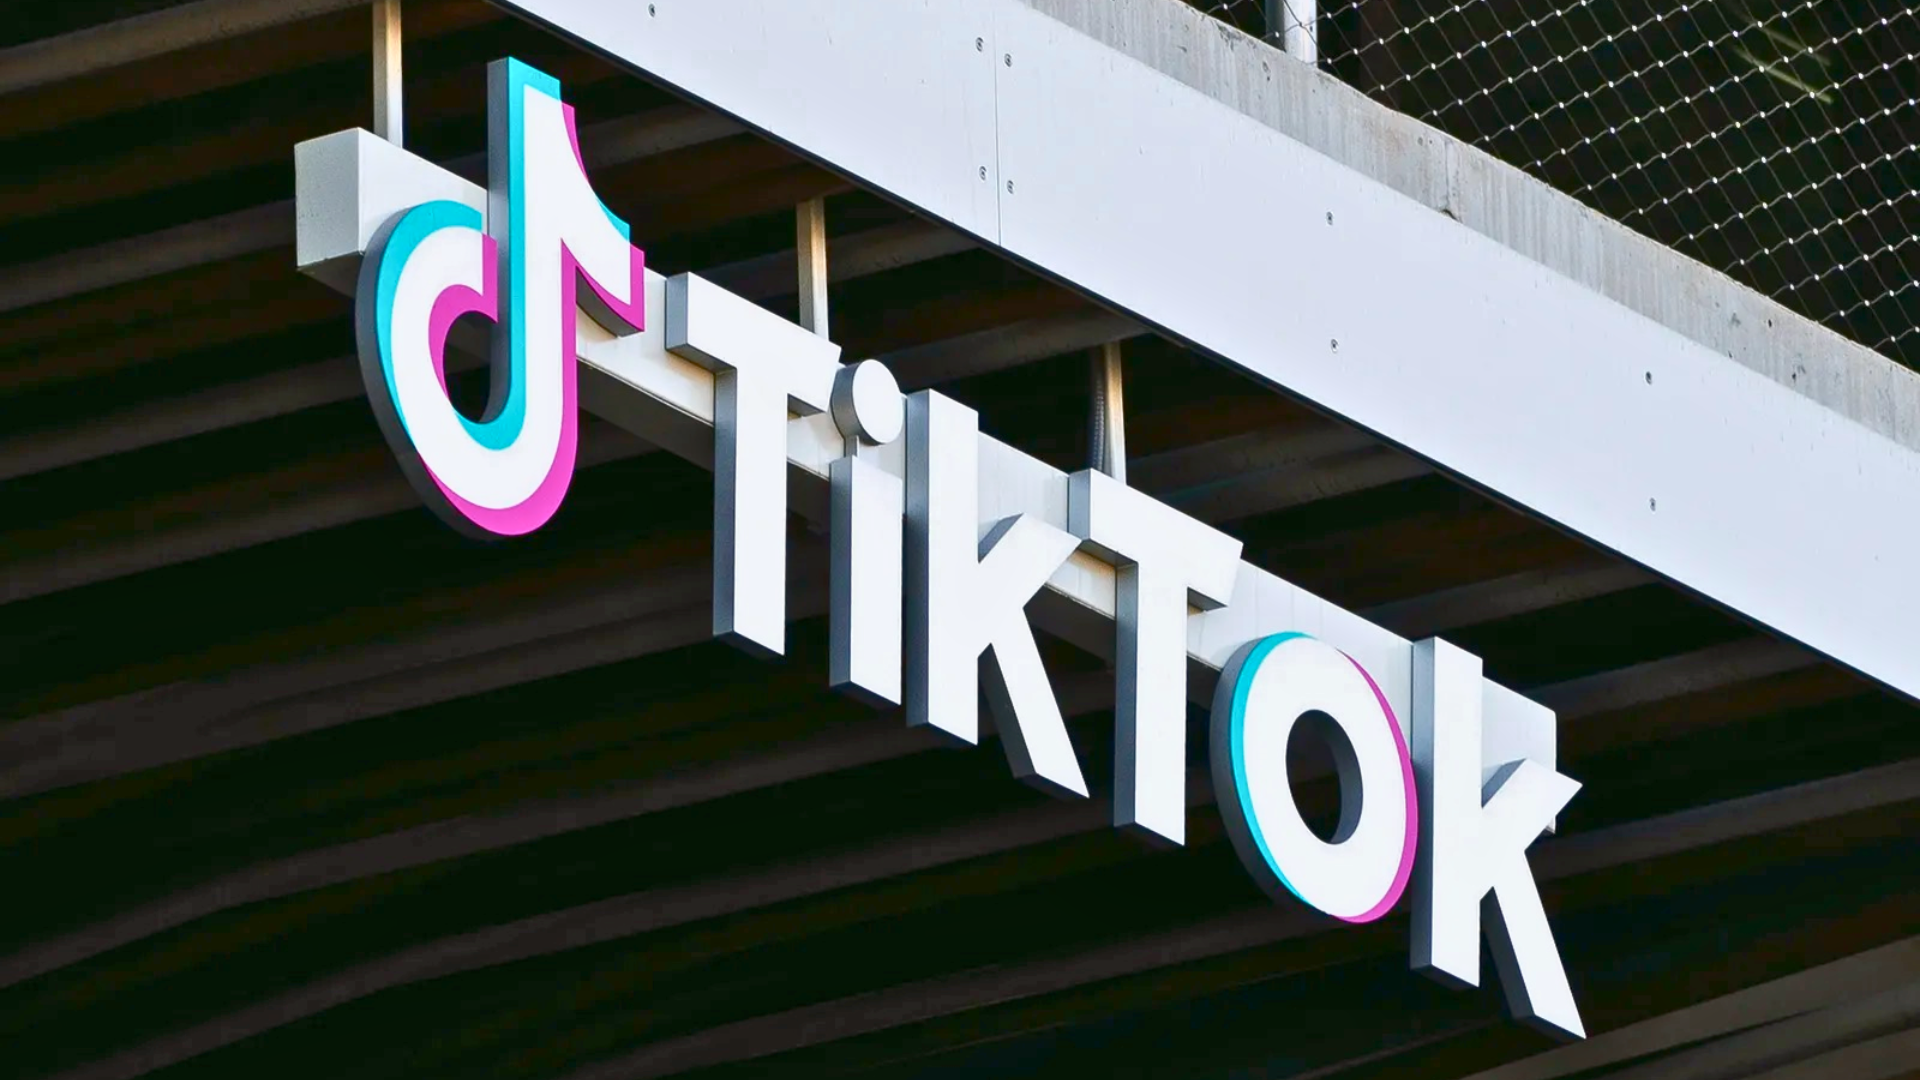 Criadora do TikTok, ByteDance investe em gerador de bots para competir com ChatGPT